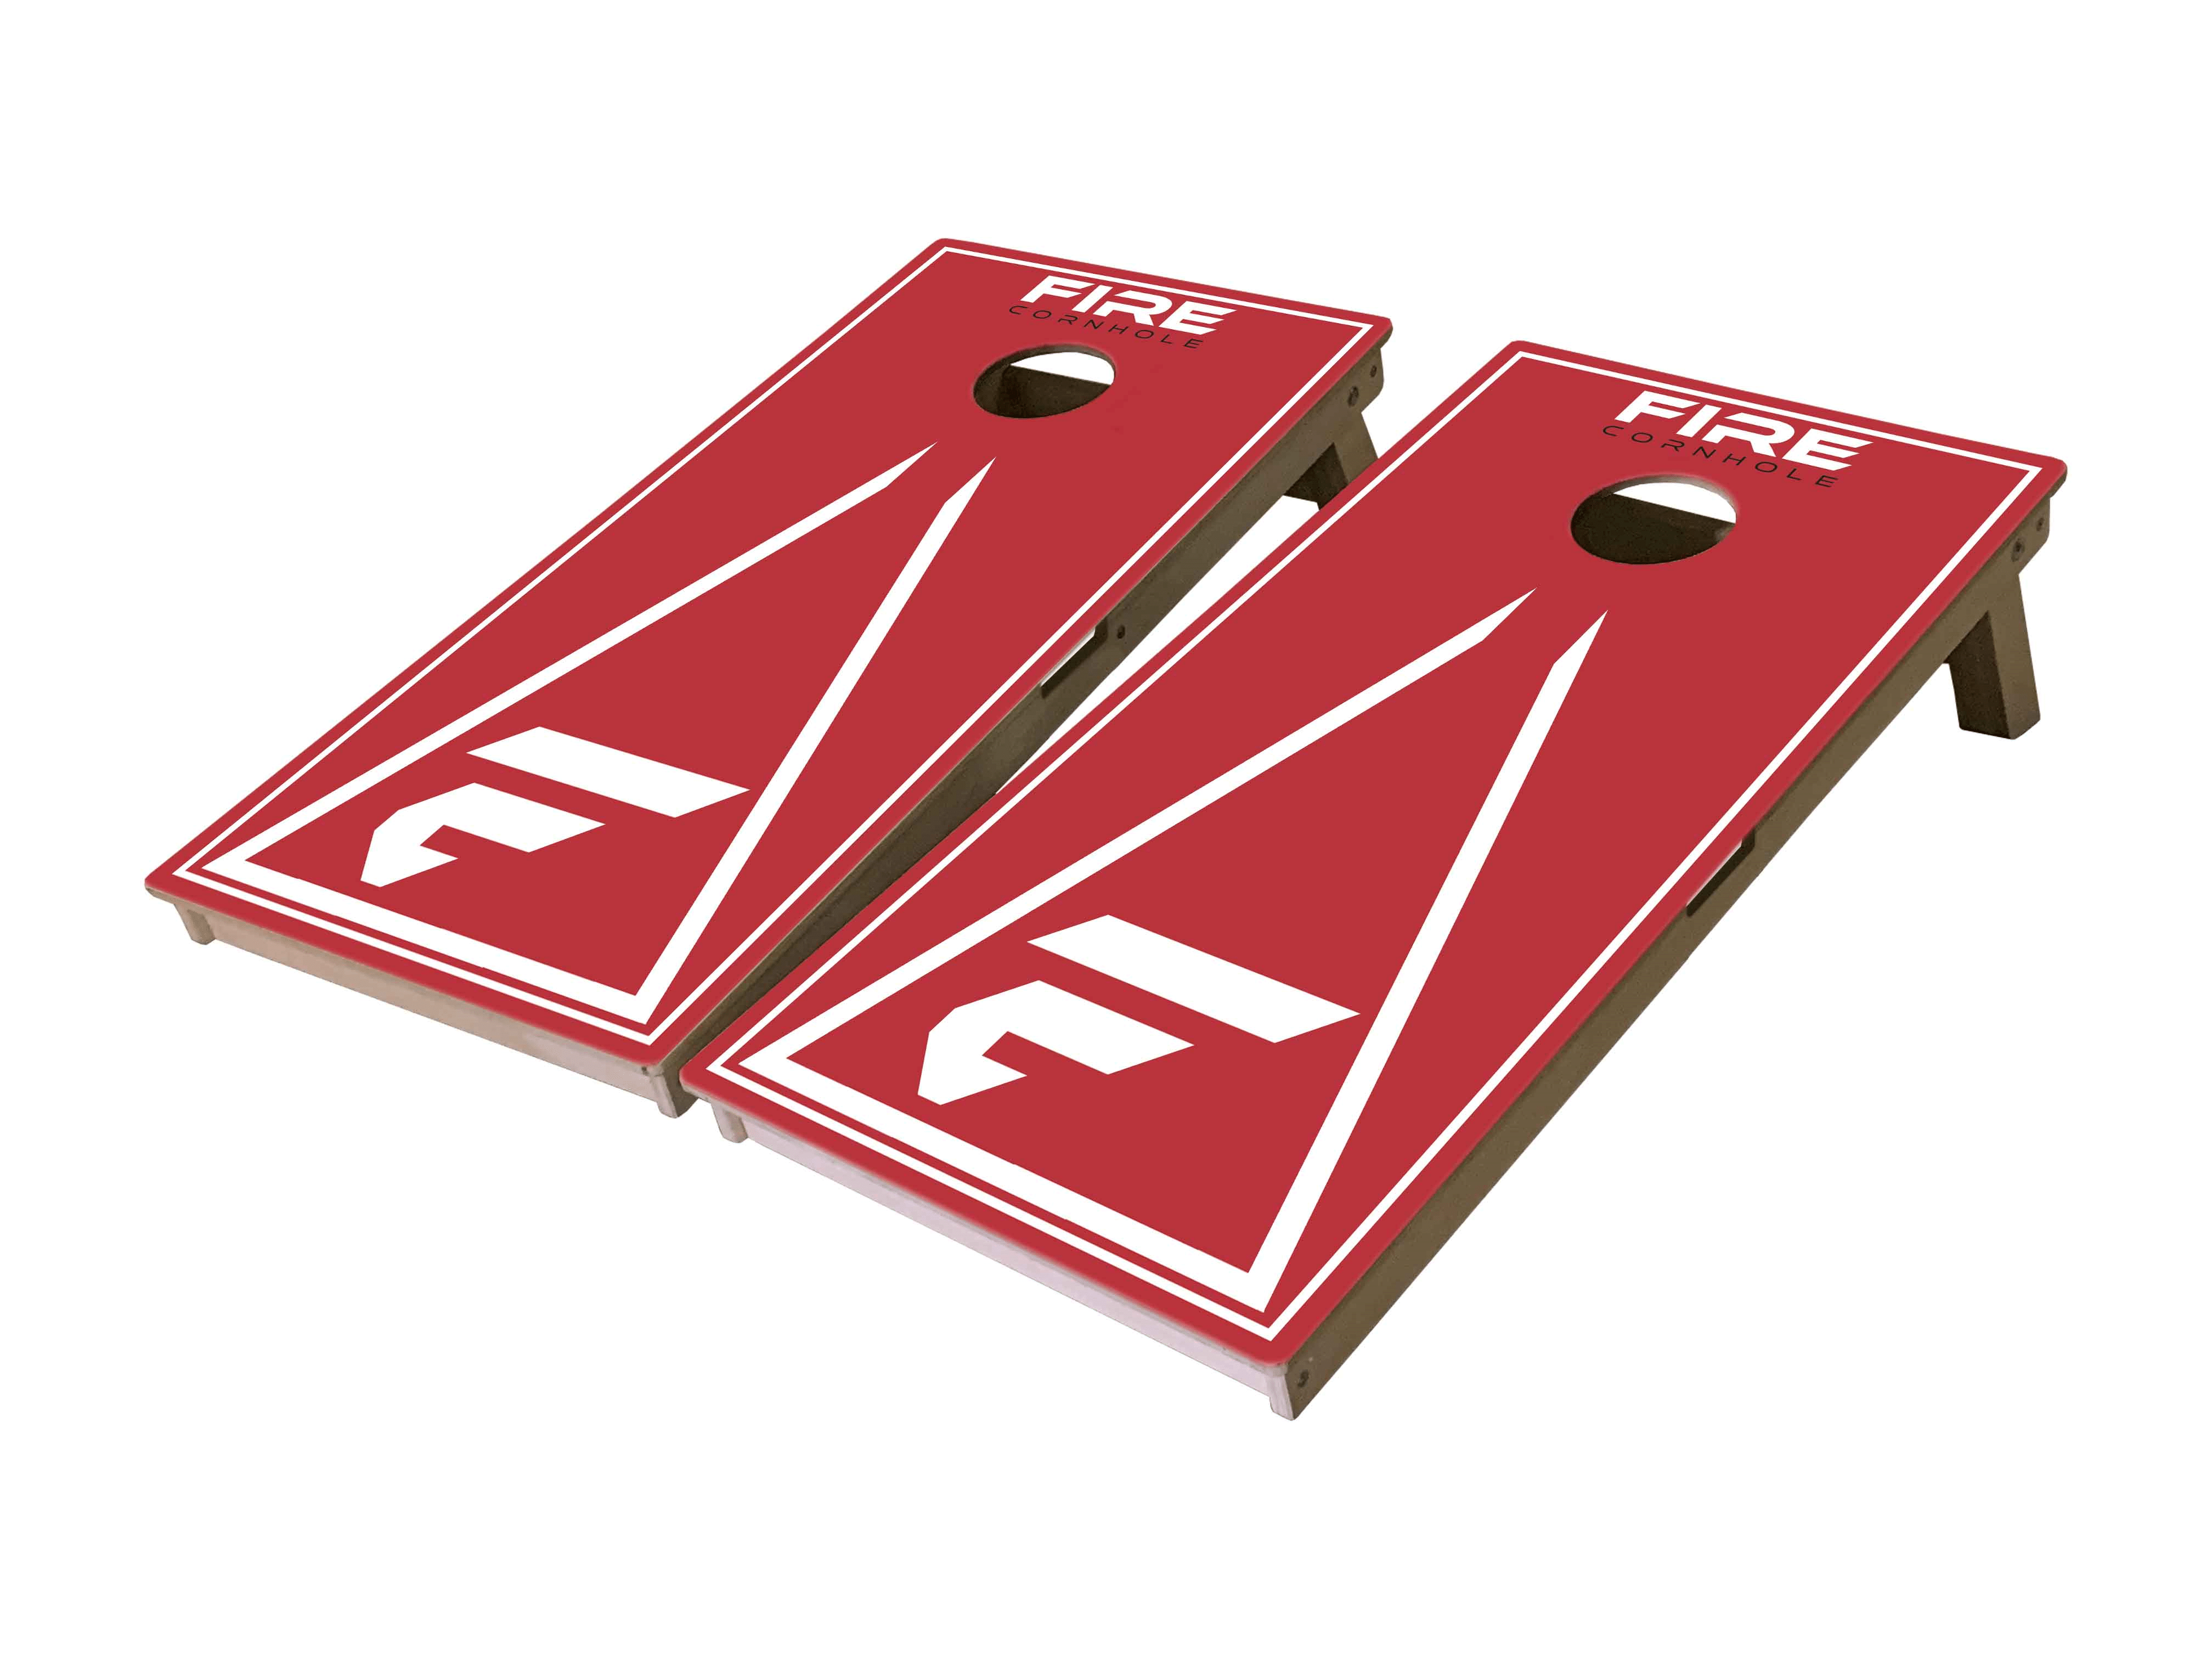 Fire Cornhole Mini Cornhole Boards with triangle design in red and white